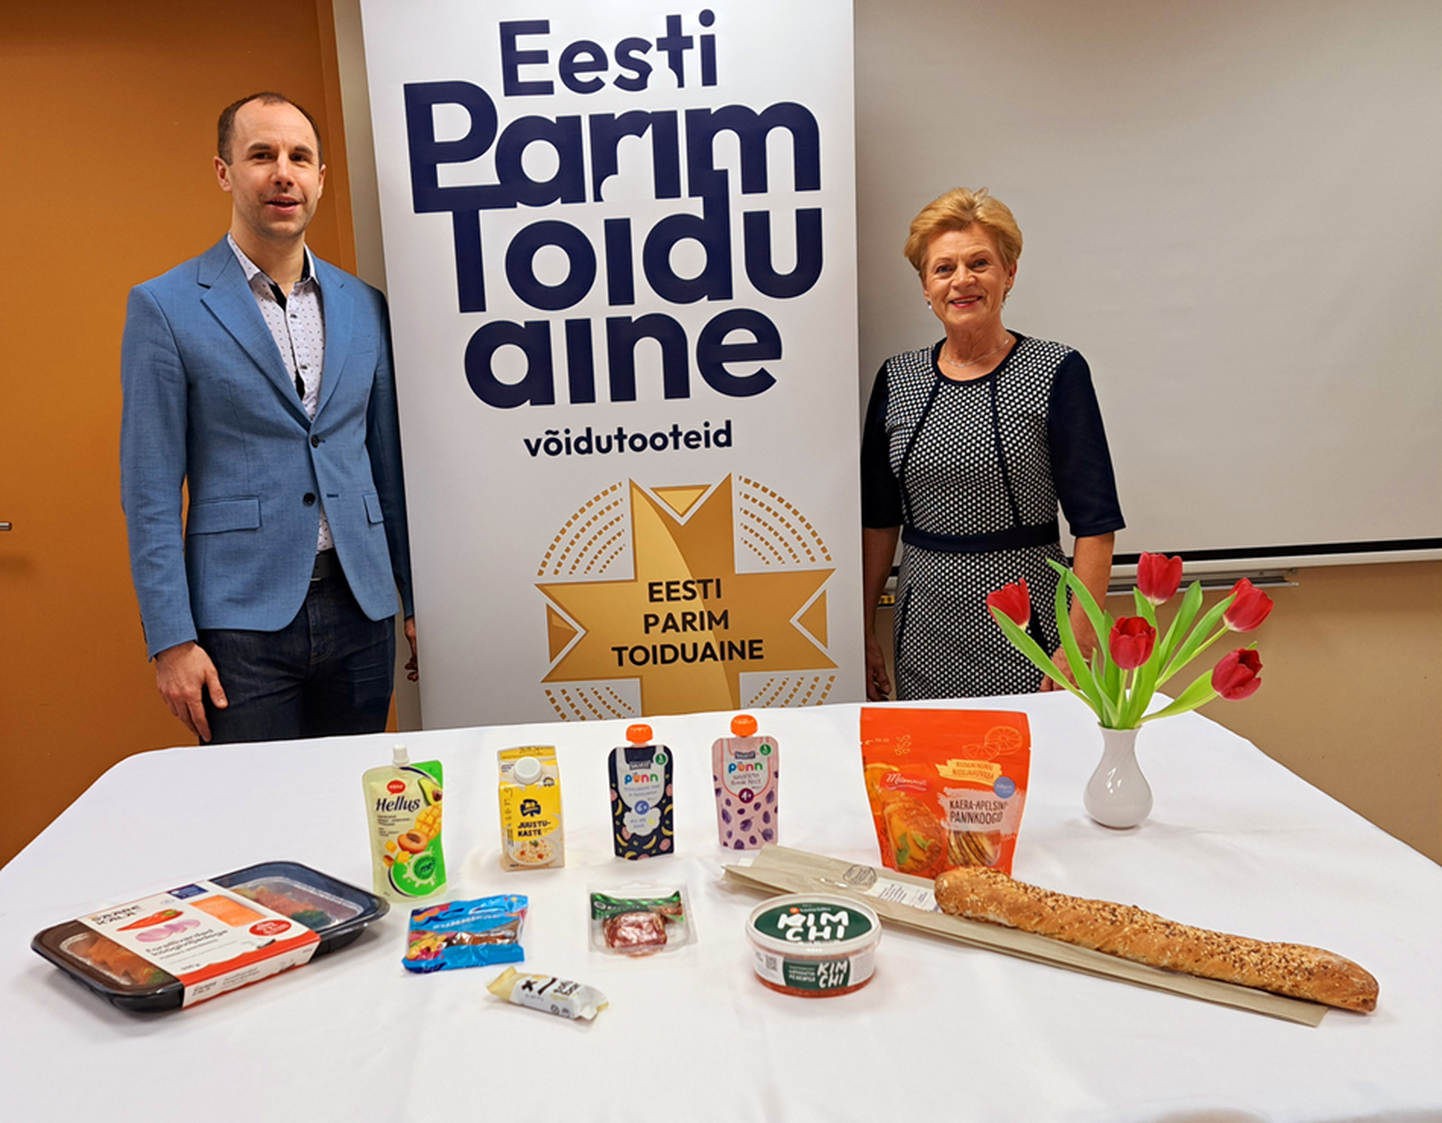 Eesti parima toiduaine konkursi võitjate hulgas oli esialgu ka Rakvere trühvlisalaami (laual keskel), kuid hiljem tulemusi korrigeeriti. Vasakul on hindamiskomisjoni esimees toiduteadlane Rain Kuldjärv, paremal toiduliidu juht Sirje Potisepp.